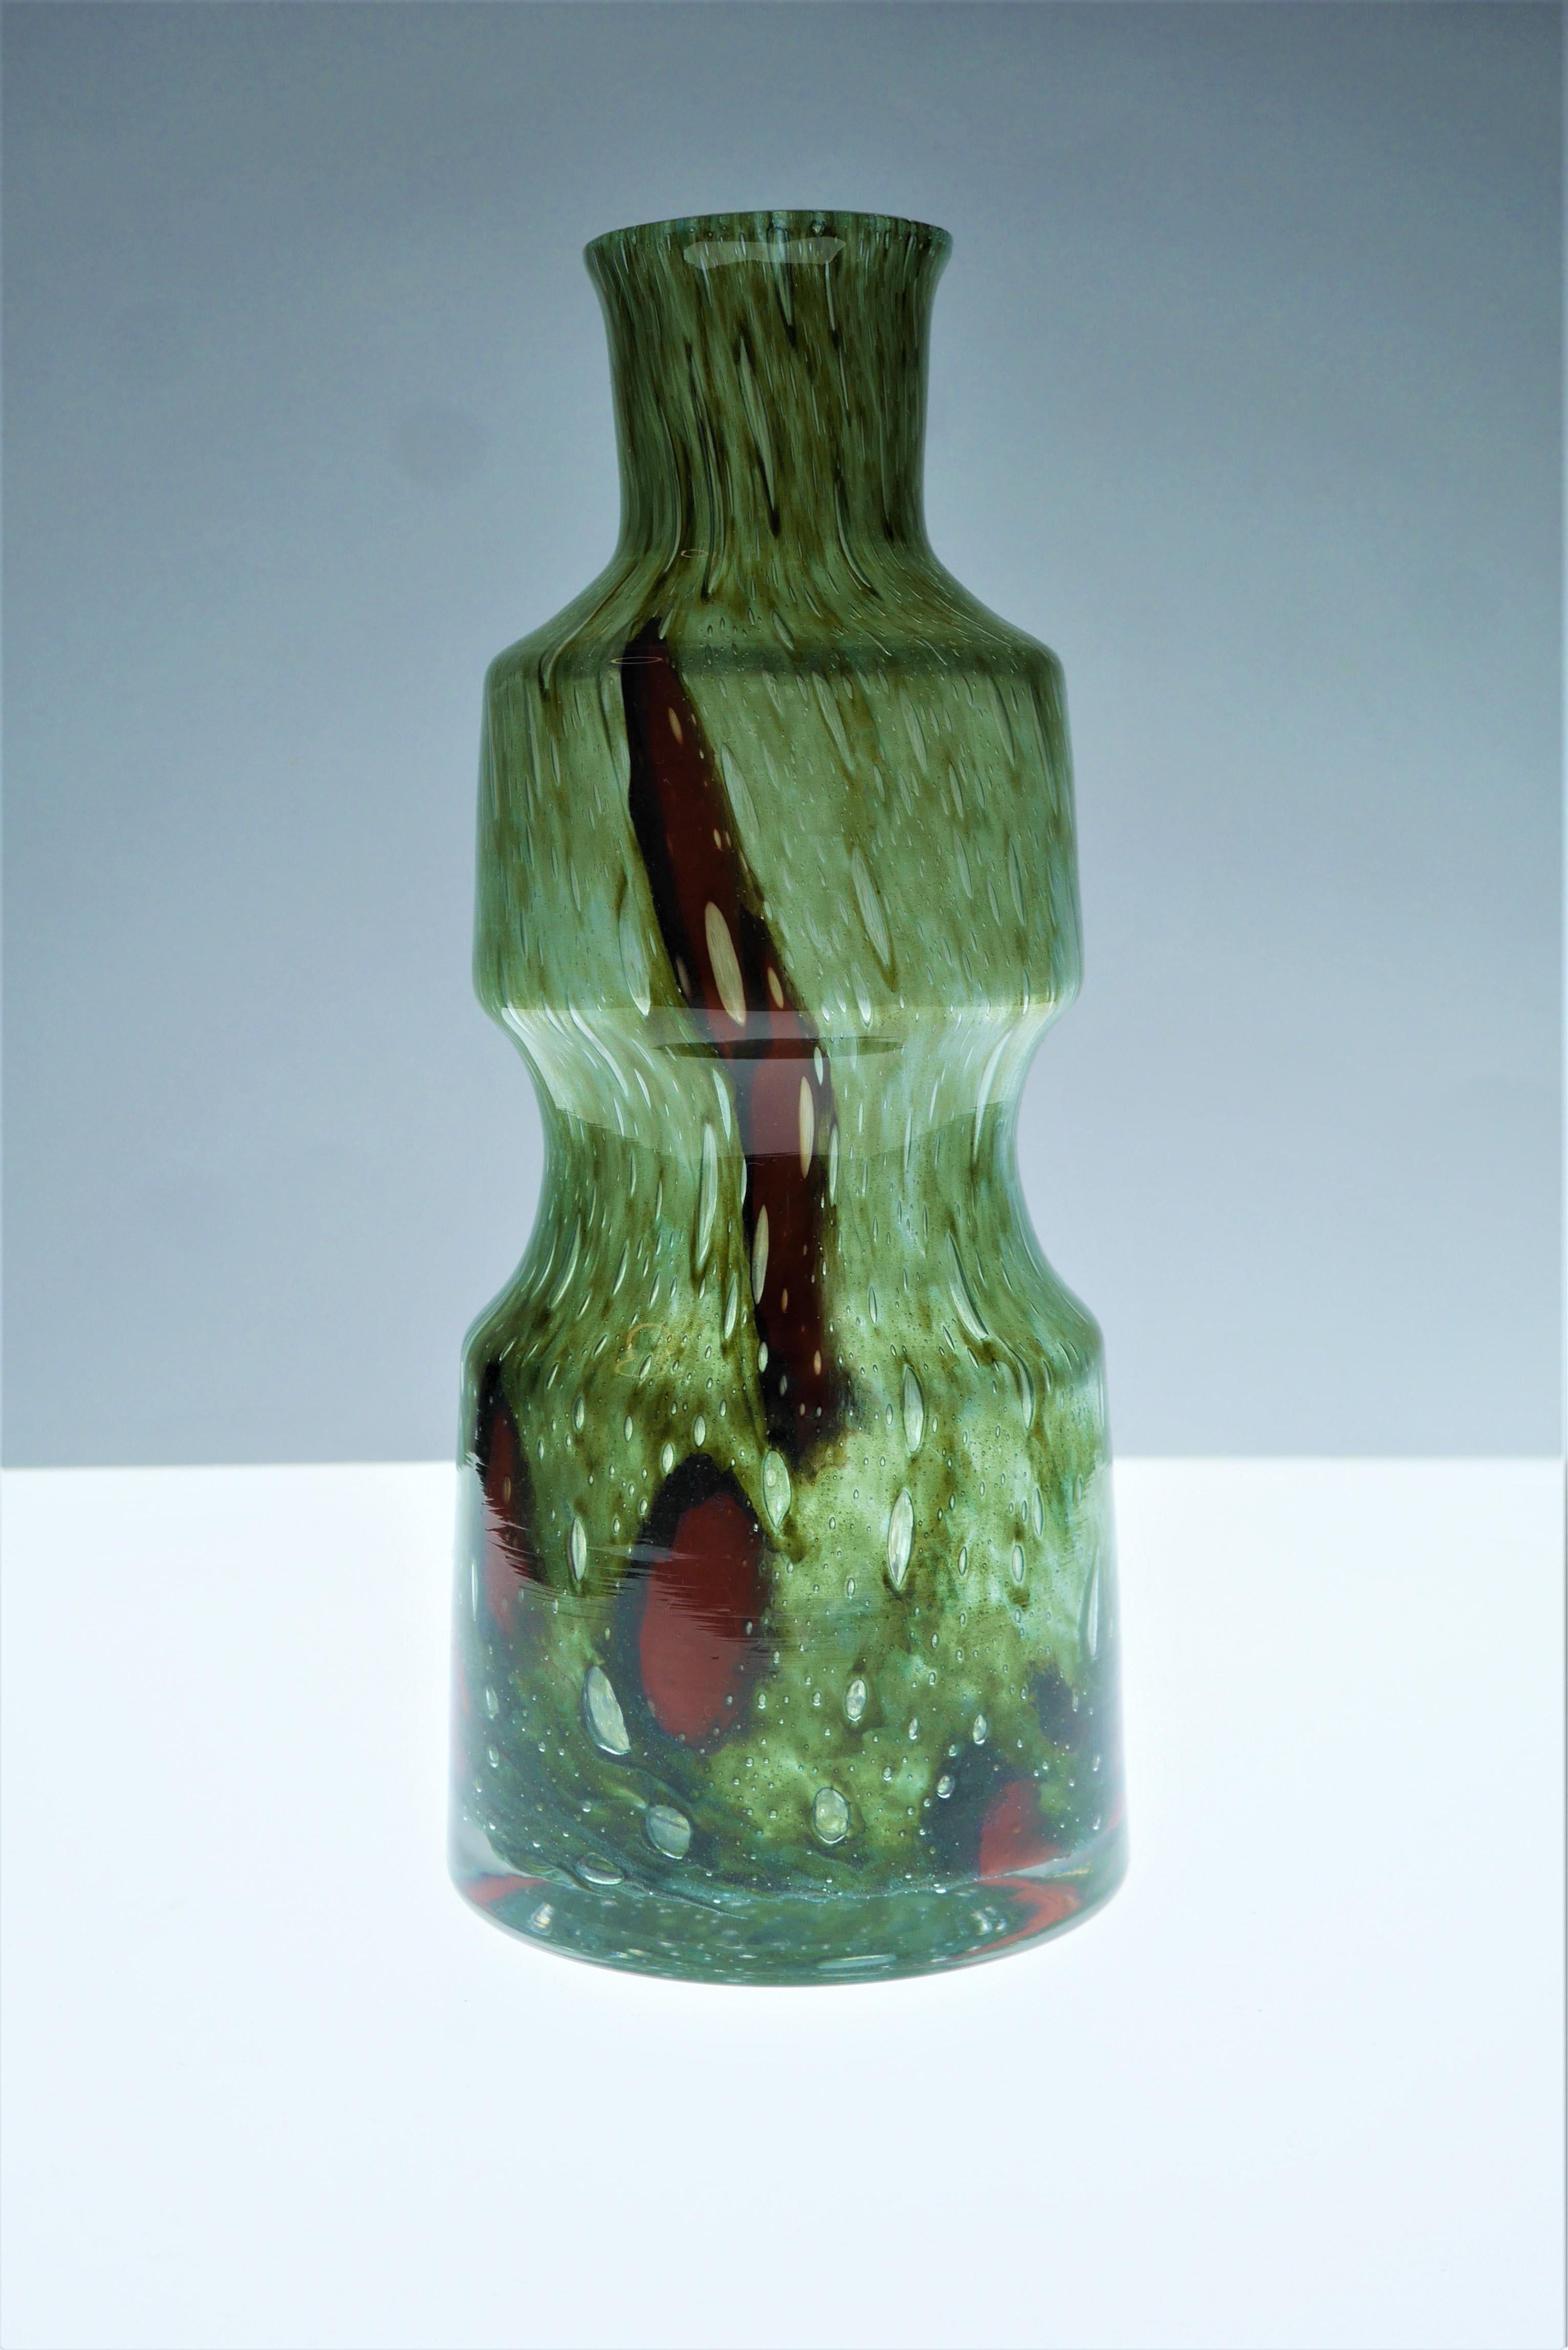 Czech Green Glass Art Vase from Prachen Glass Works